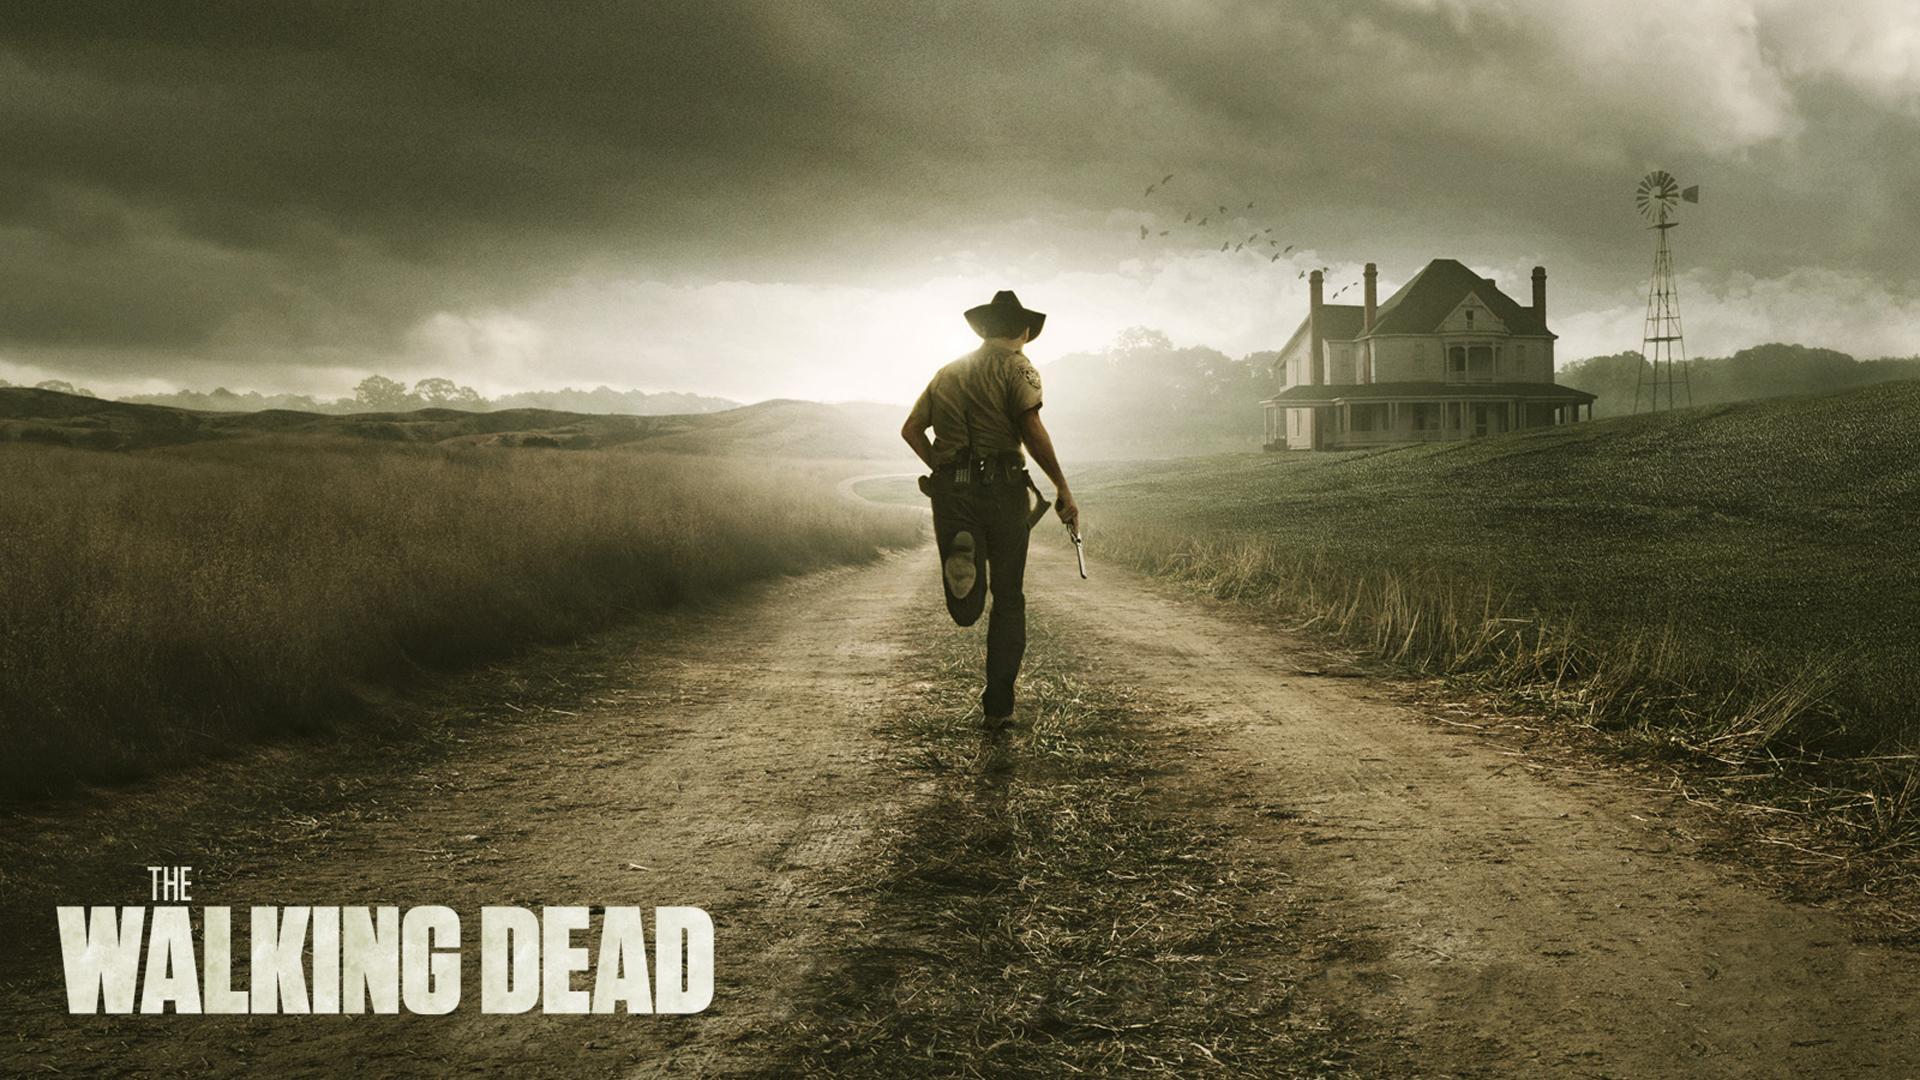 The Walking Dead - Walking Dead Wallpaper Hd - HD Wallpaper 